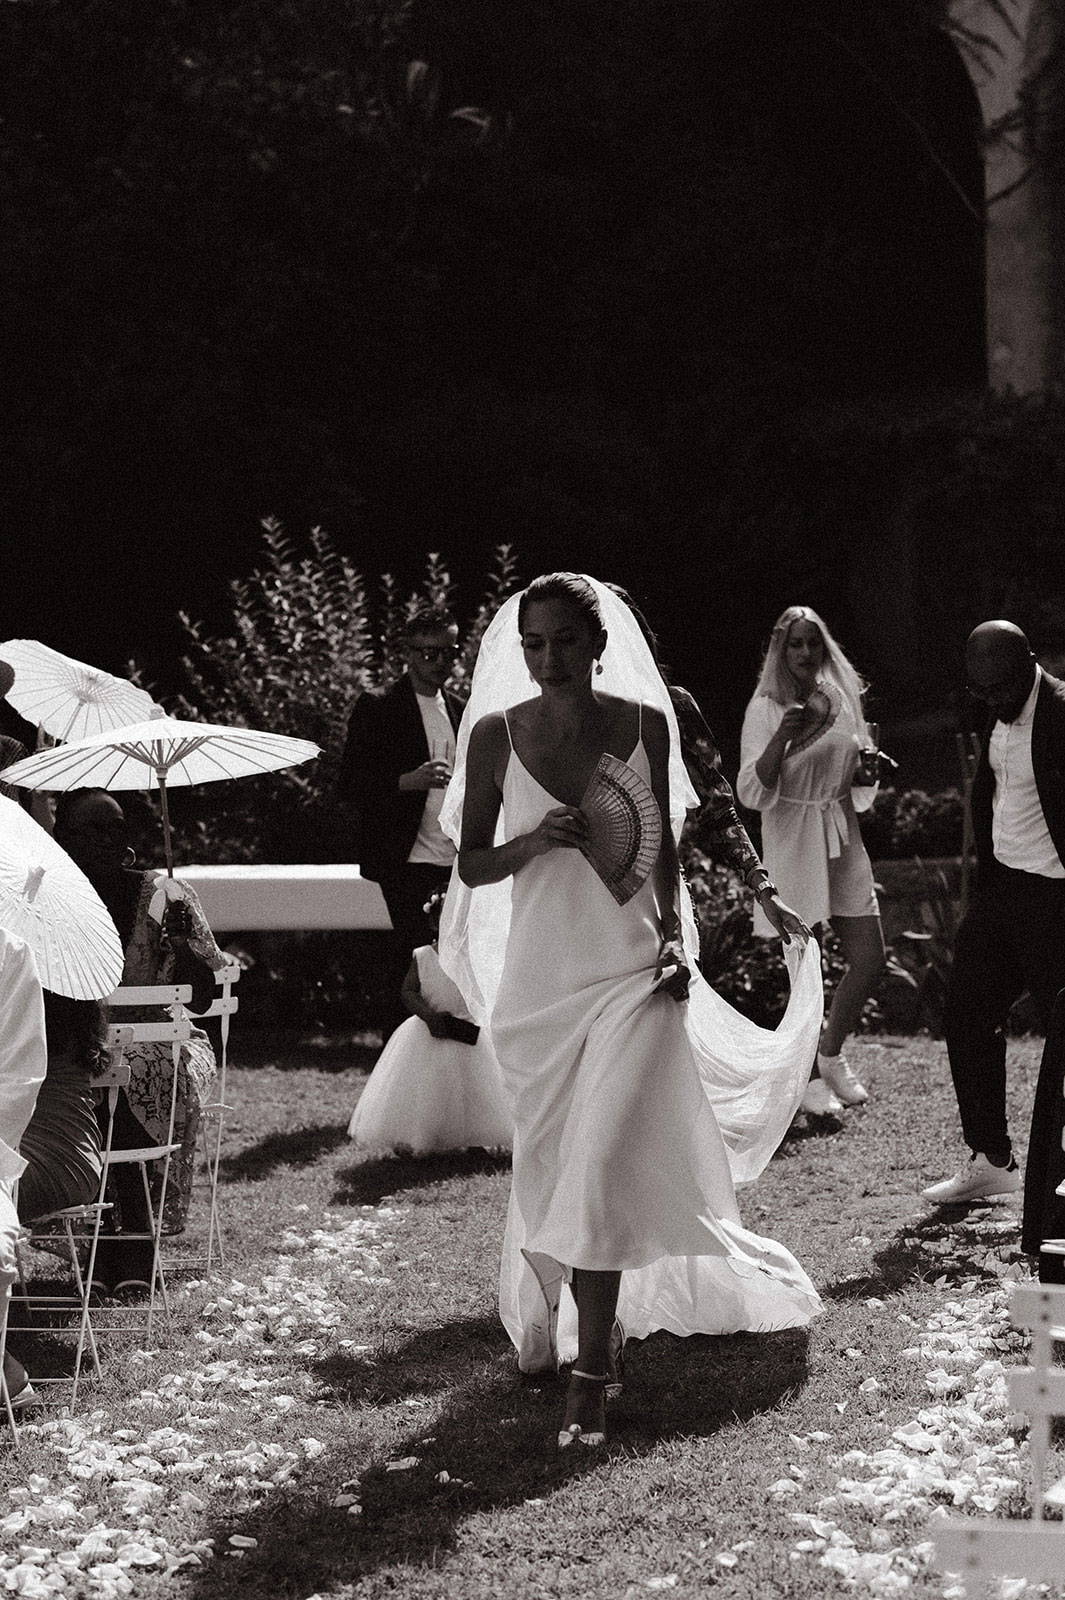 Die Braut hält einen Regenschirm, als sie zum Altar schreitet